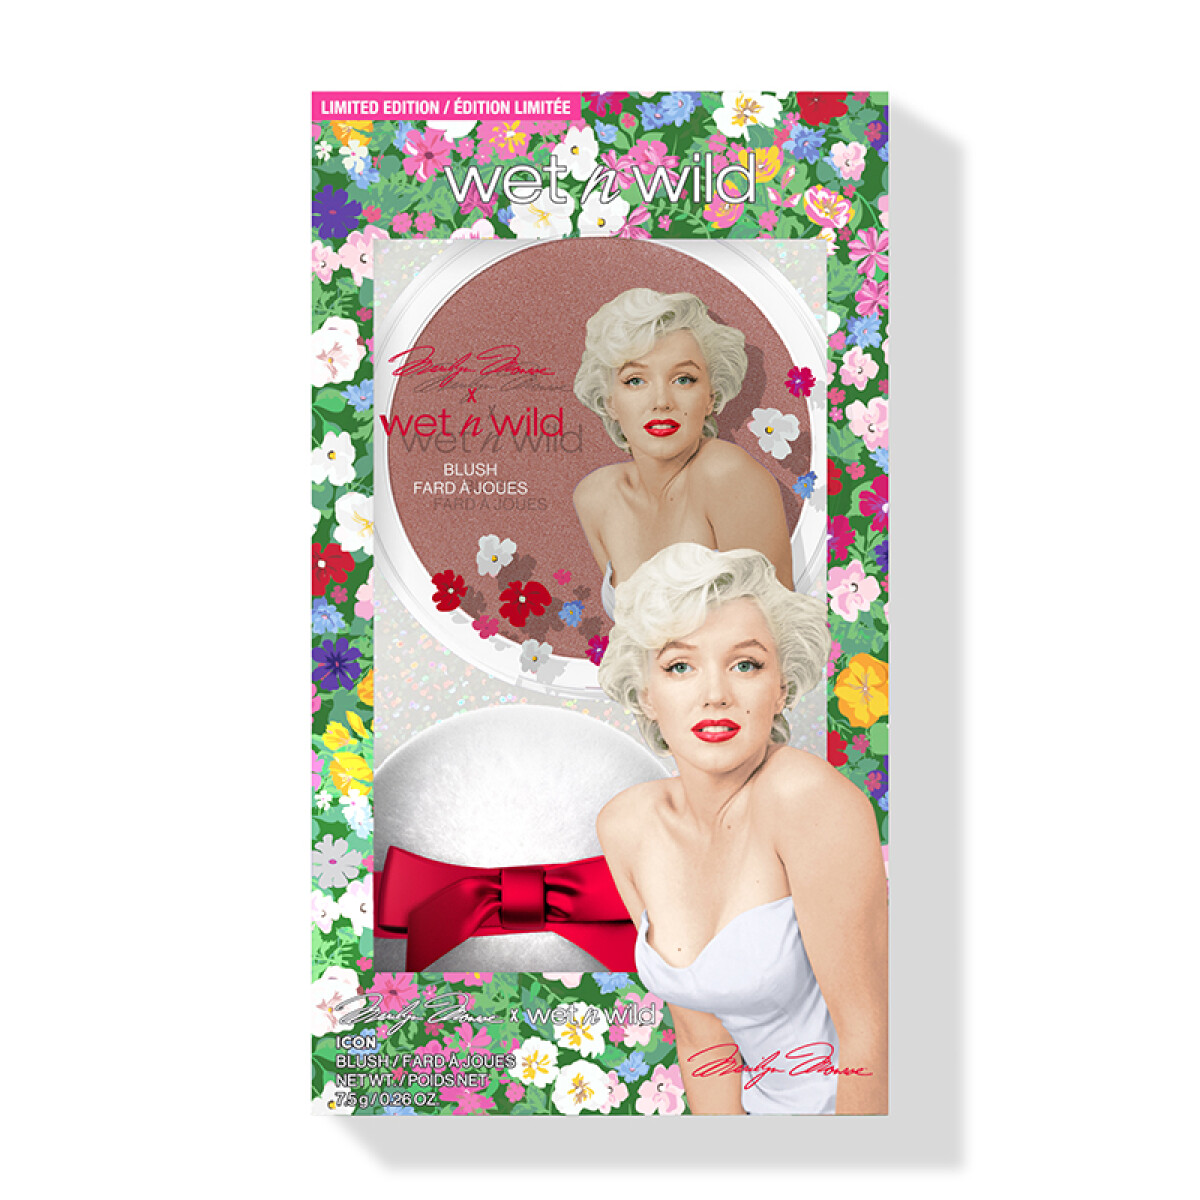 Kits de maquillaje edición limitada Marilyn Monroe Wet n Wild - Rubor + Esponja suave 